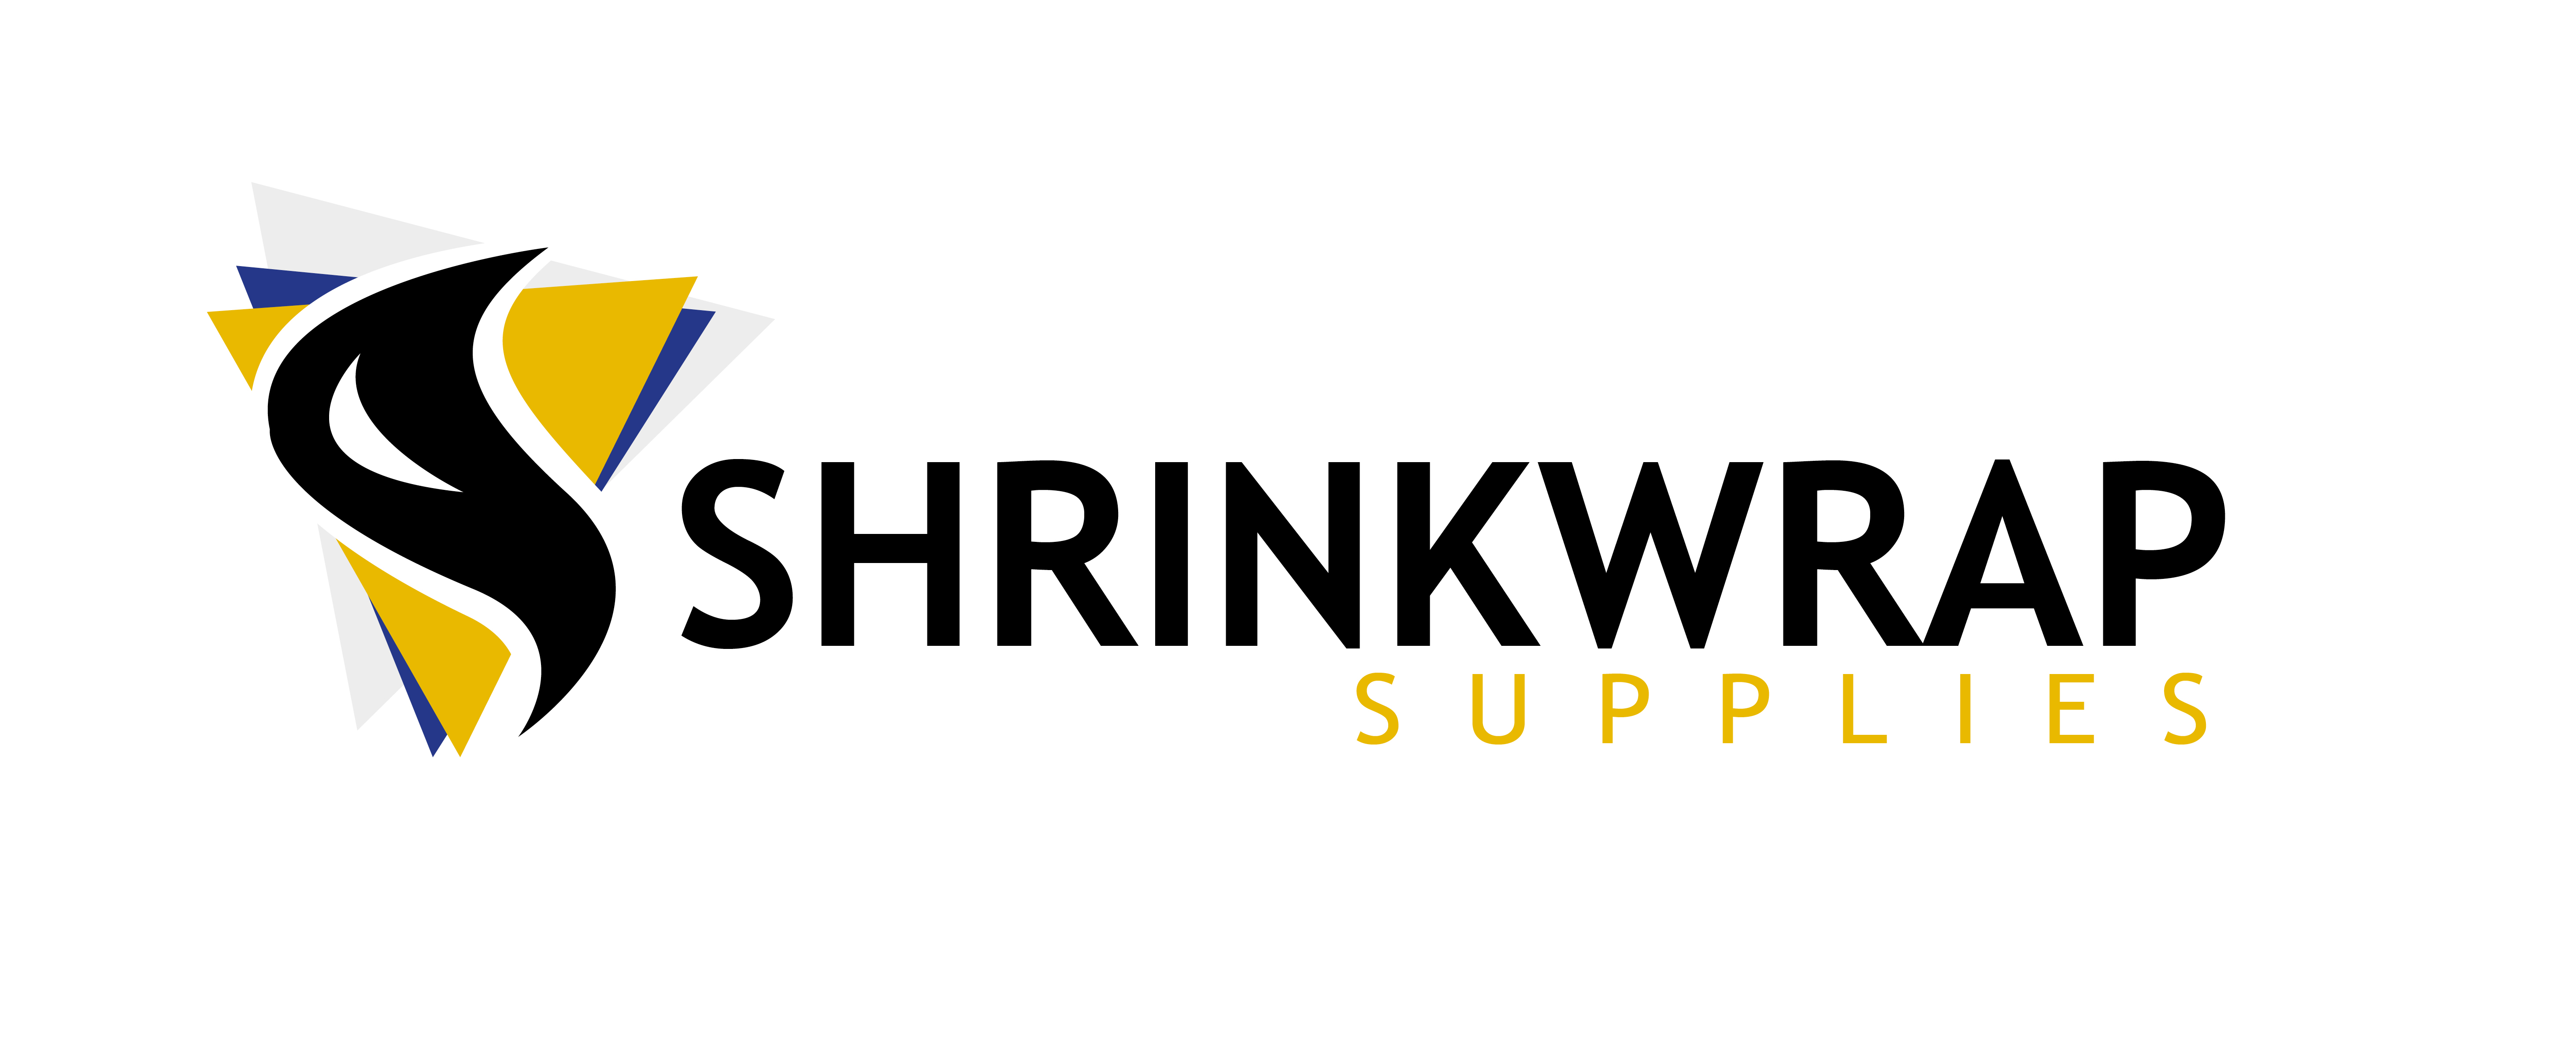 108983161 shrinkwrap logo